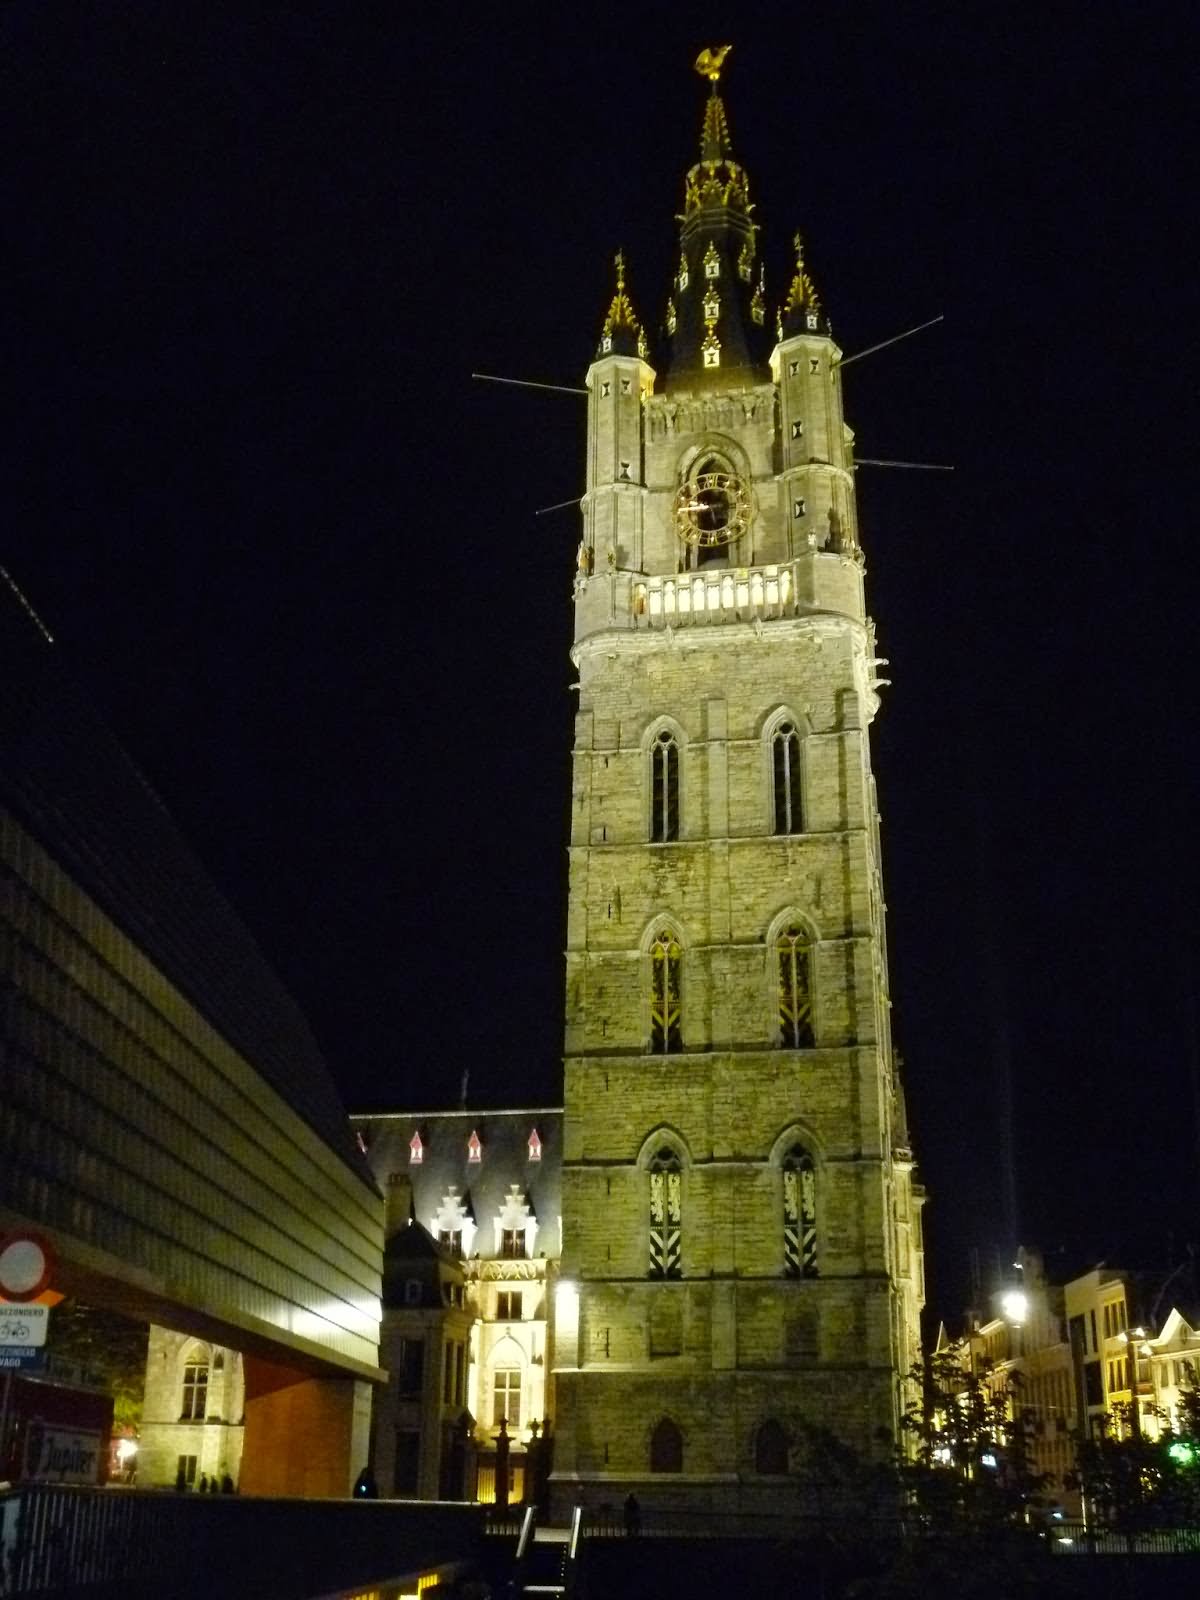 Night View Of The Belfry Of Ghent In Belgium